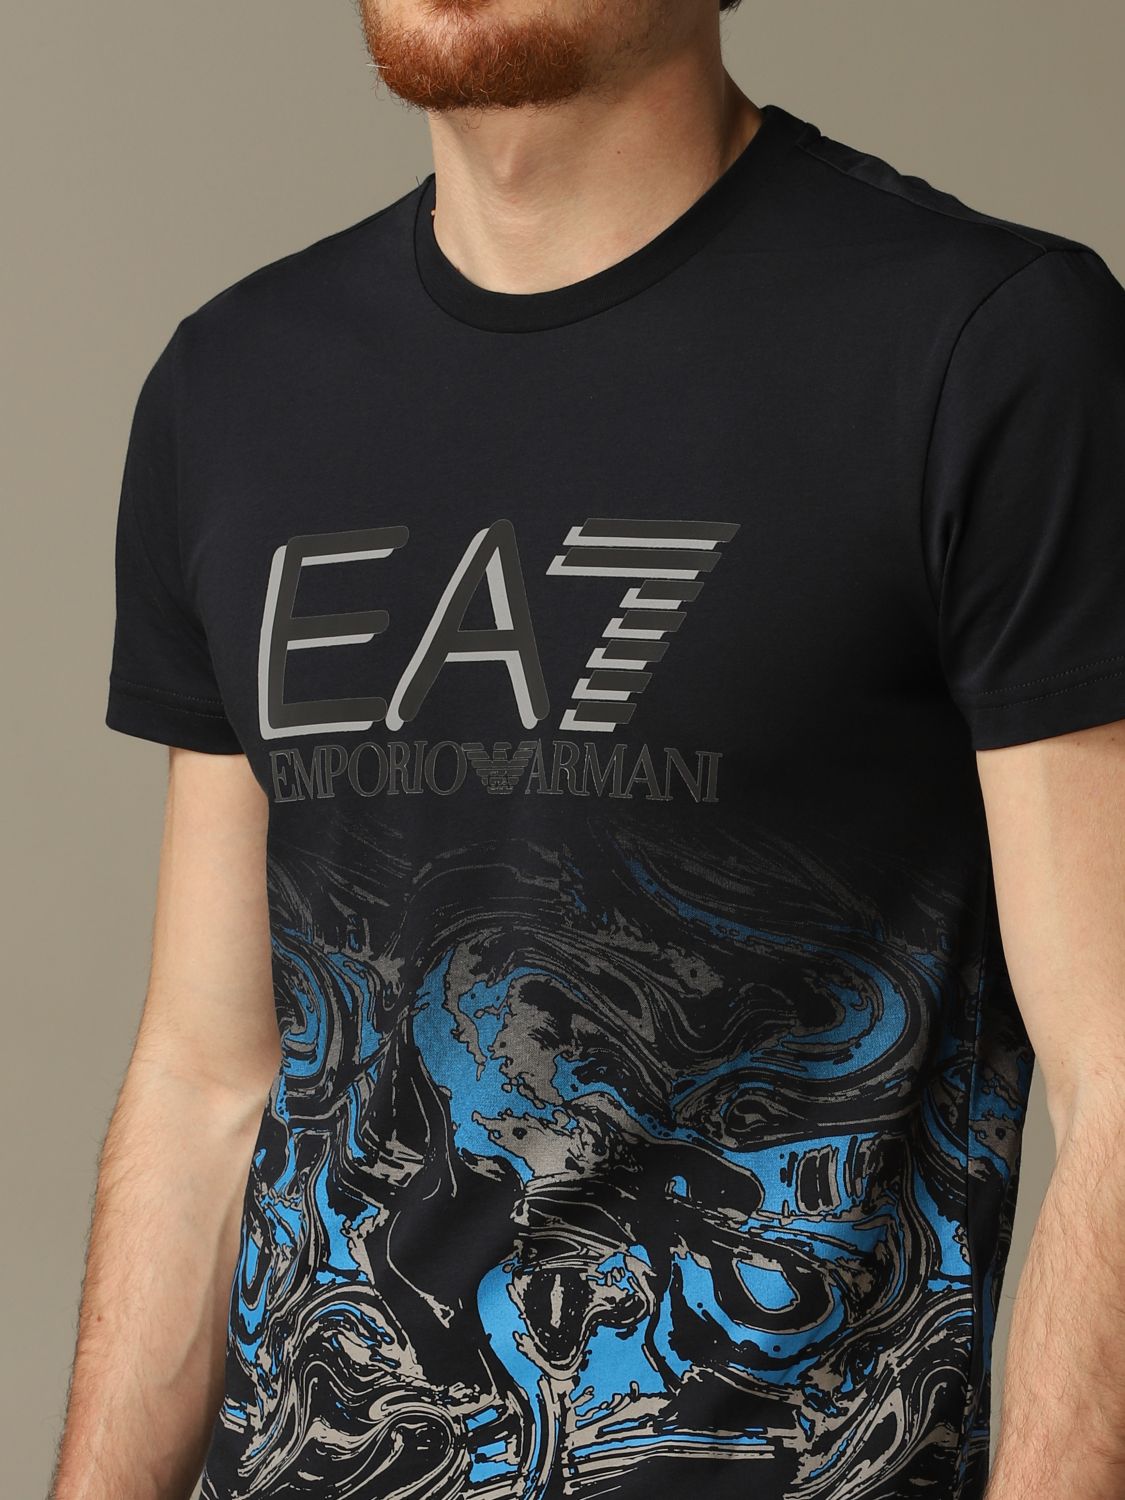 ea7 t shirt blue